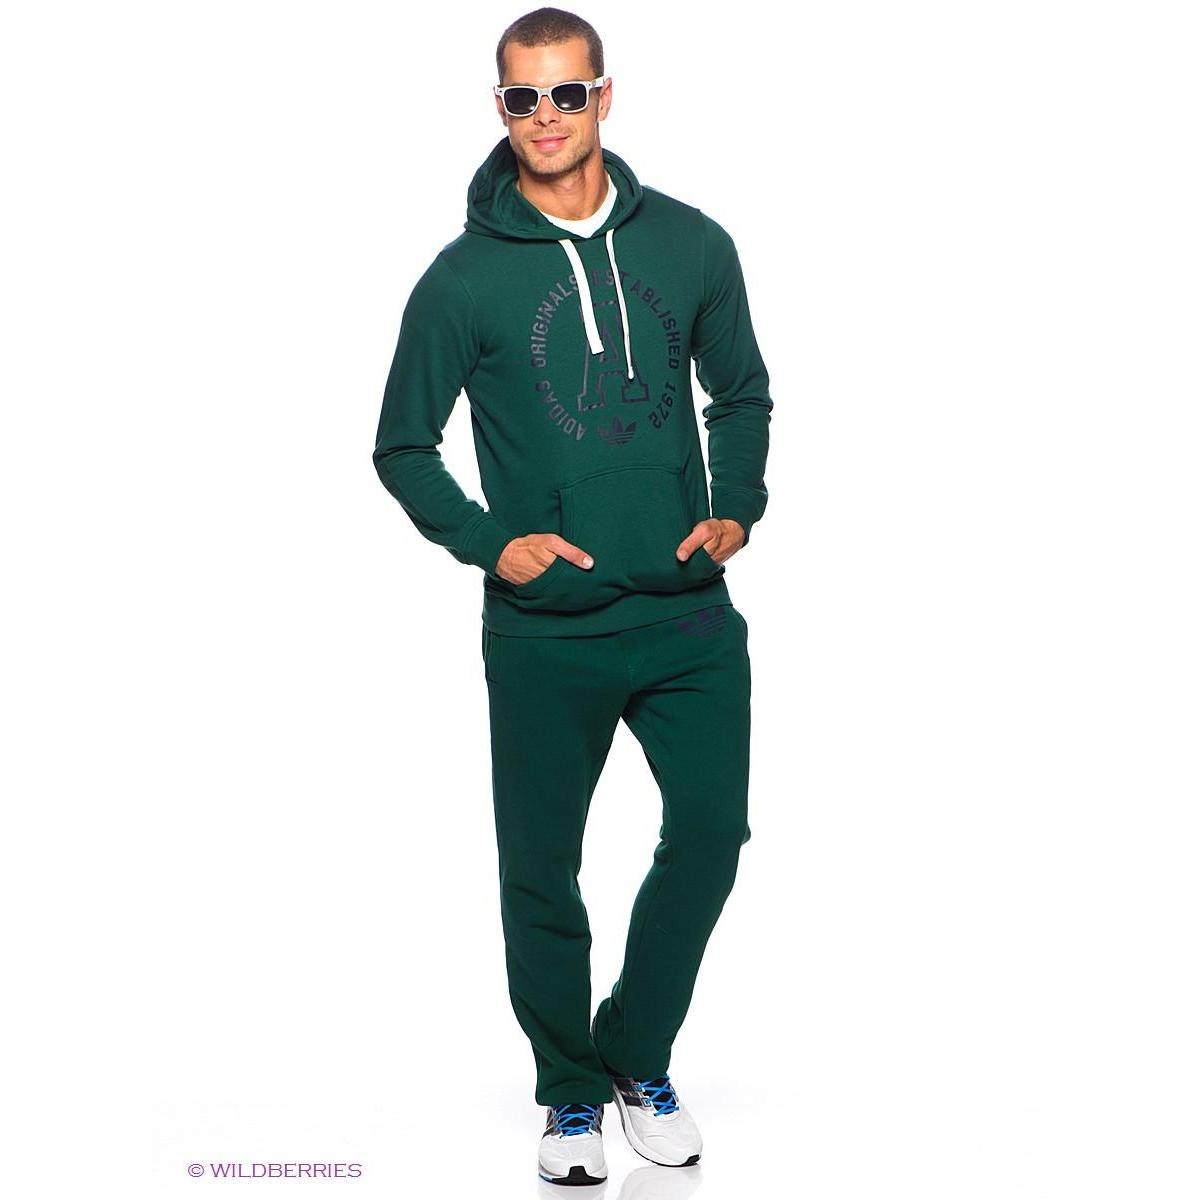 Спортивный костюм мужской валдберис. Спортивный костюм адидас ориджинал мужской зеленый. Адидас ориджинал костюм зеленый. Спорт костюм адидас зеленый мужской. Адидас 2018 мужской костюм зеленый.